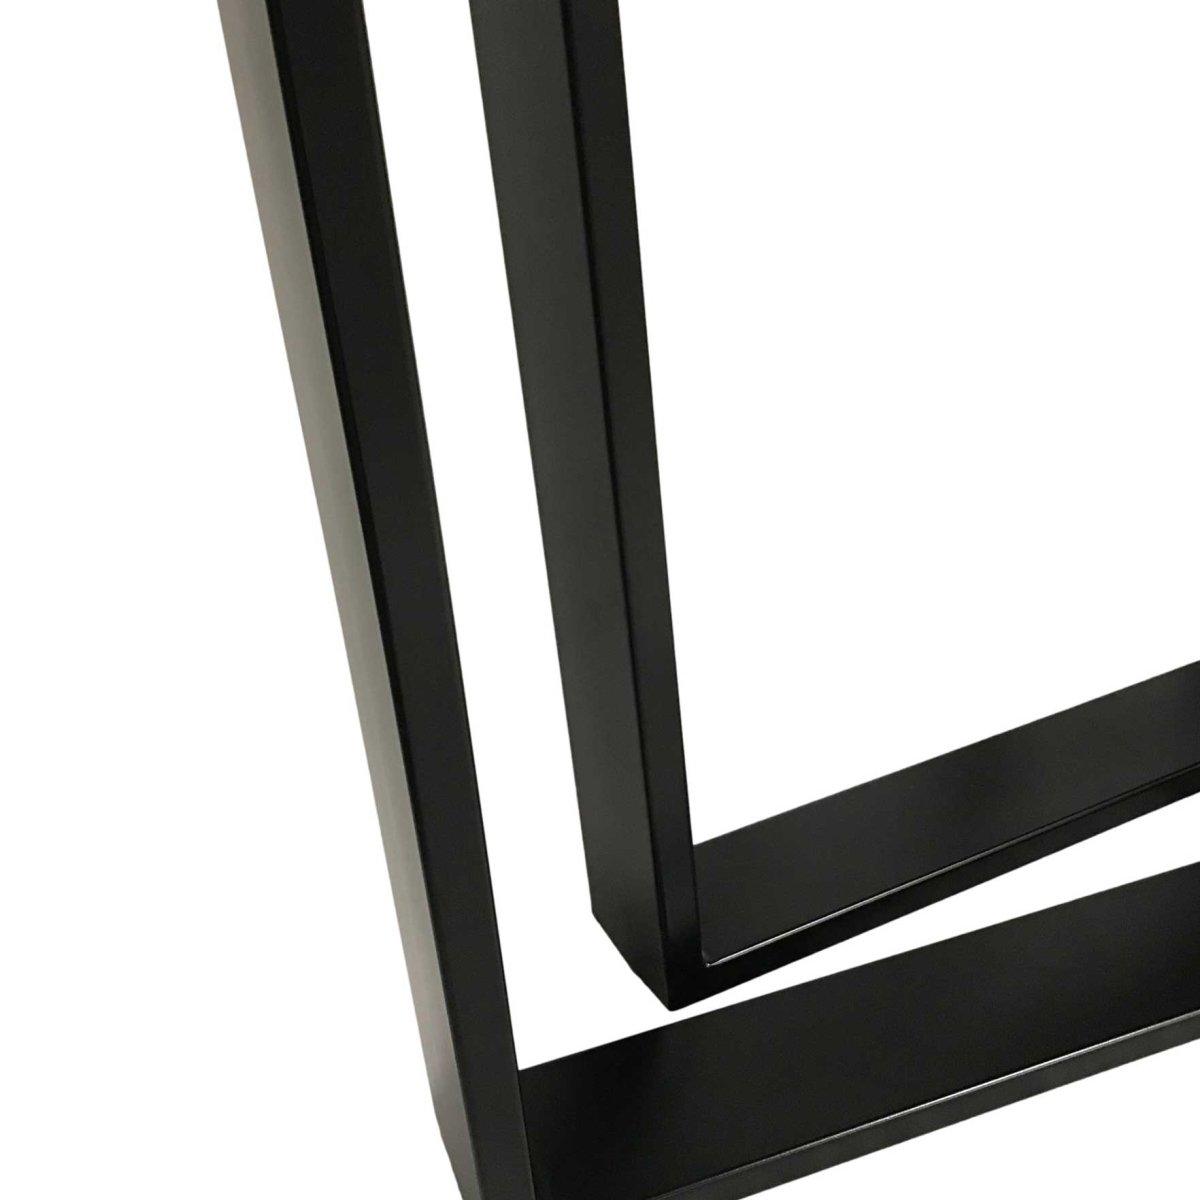 Pieds de table en métal noir industriel de style U (Ensemble de 2) - Rustic Furniture Outlet